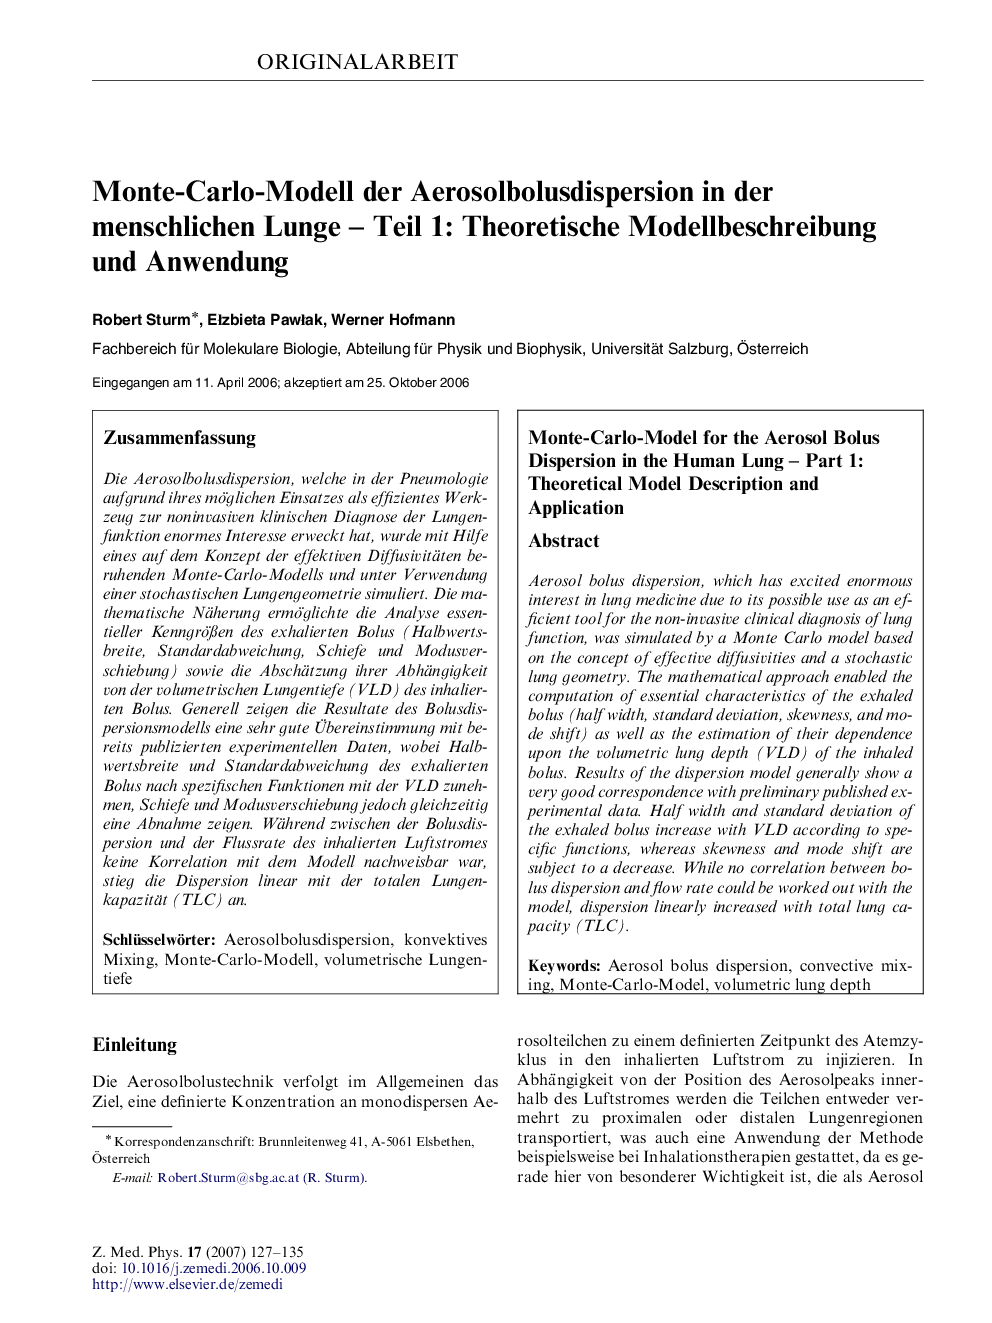 Monte-Carlo-Modell der Aerosolbolusdispersion in der menschlichen Lunge - Teil 1: Theoretische Modellbeschreibung und Anwendung